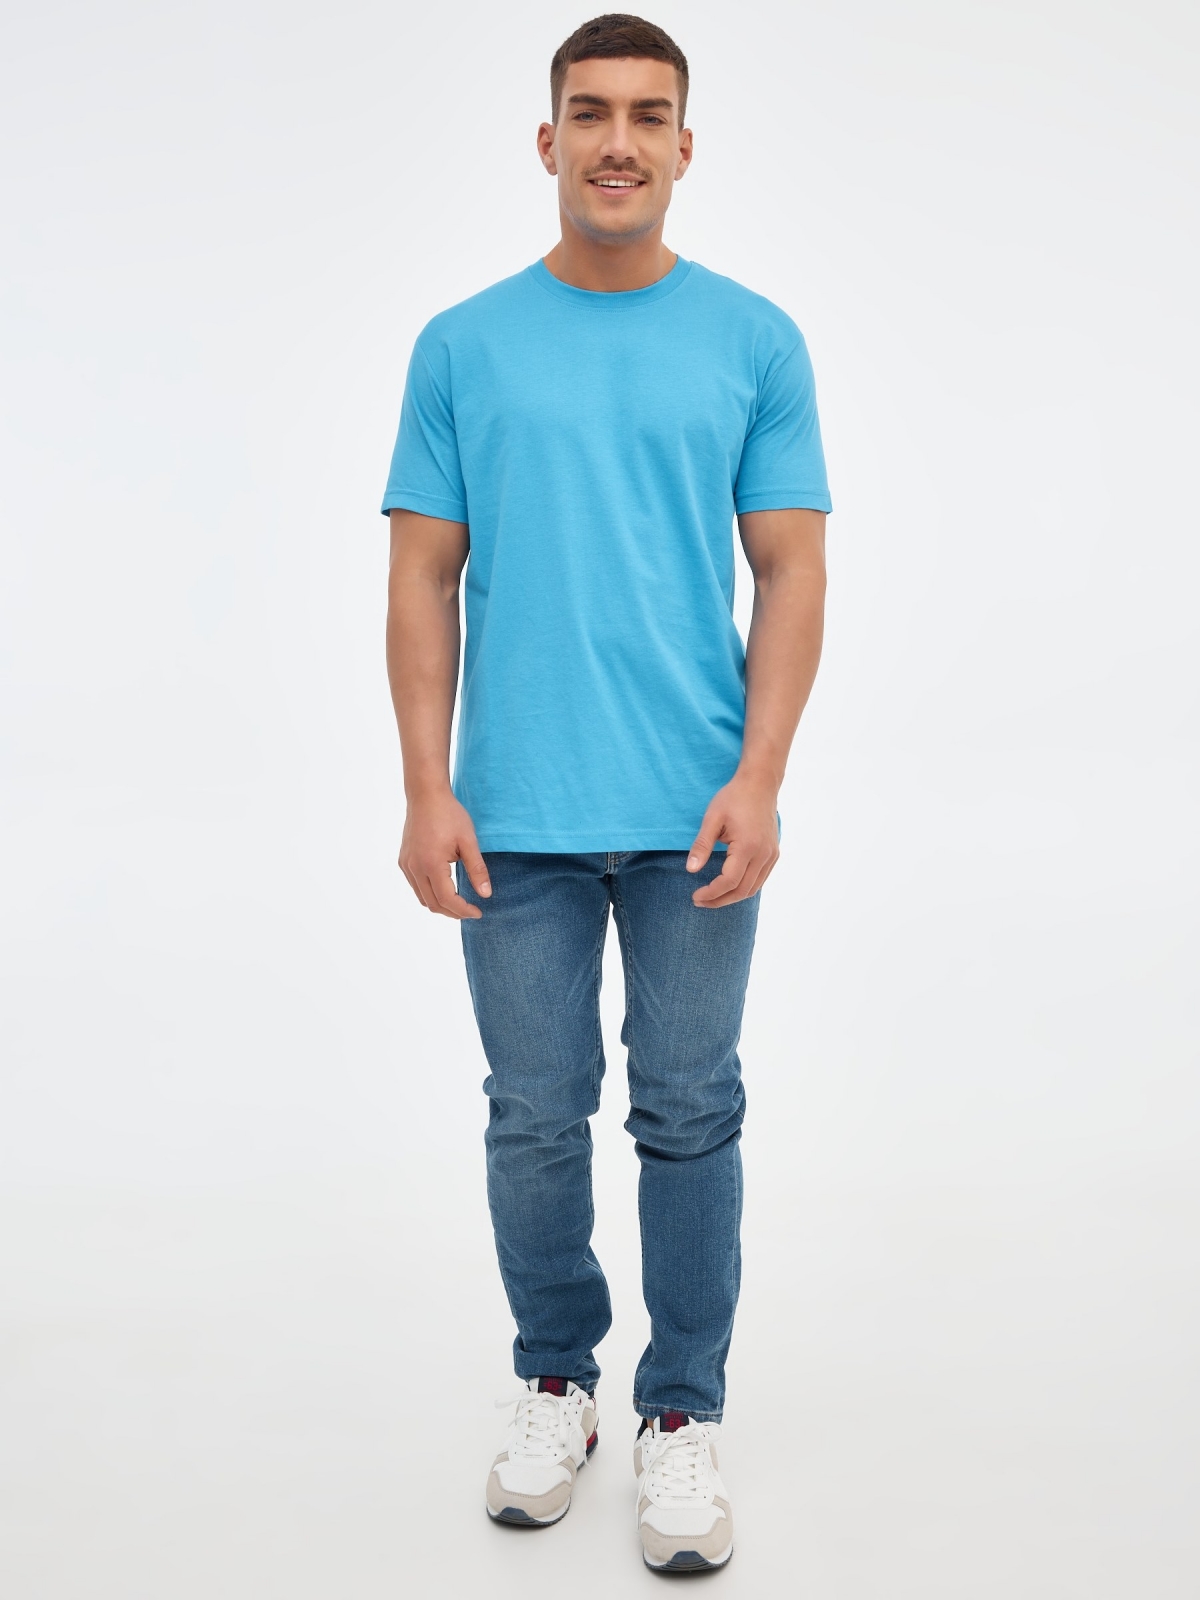 T-shirt básica manga curta azul claro vista geral frontal